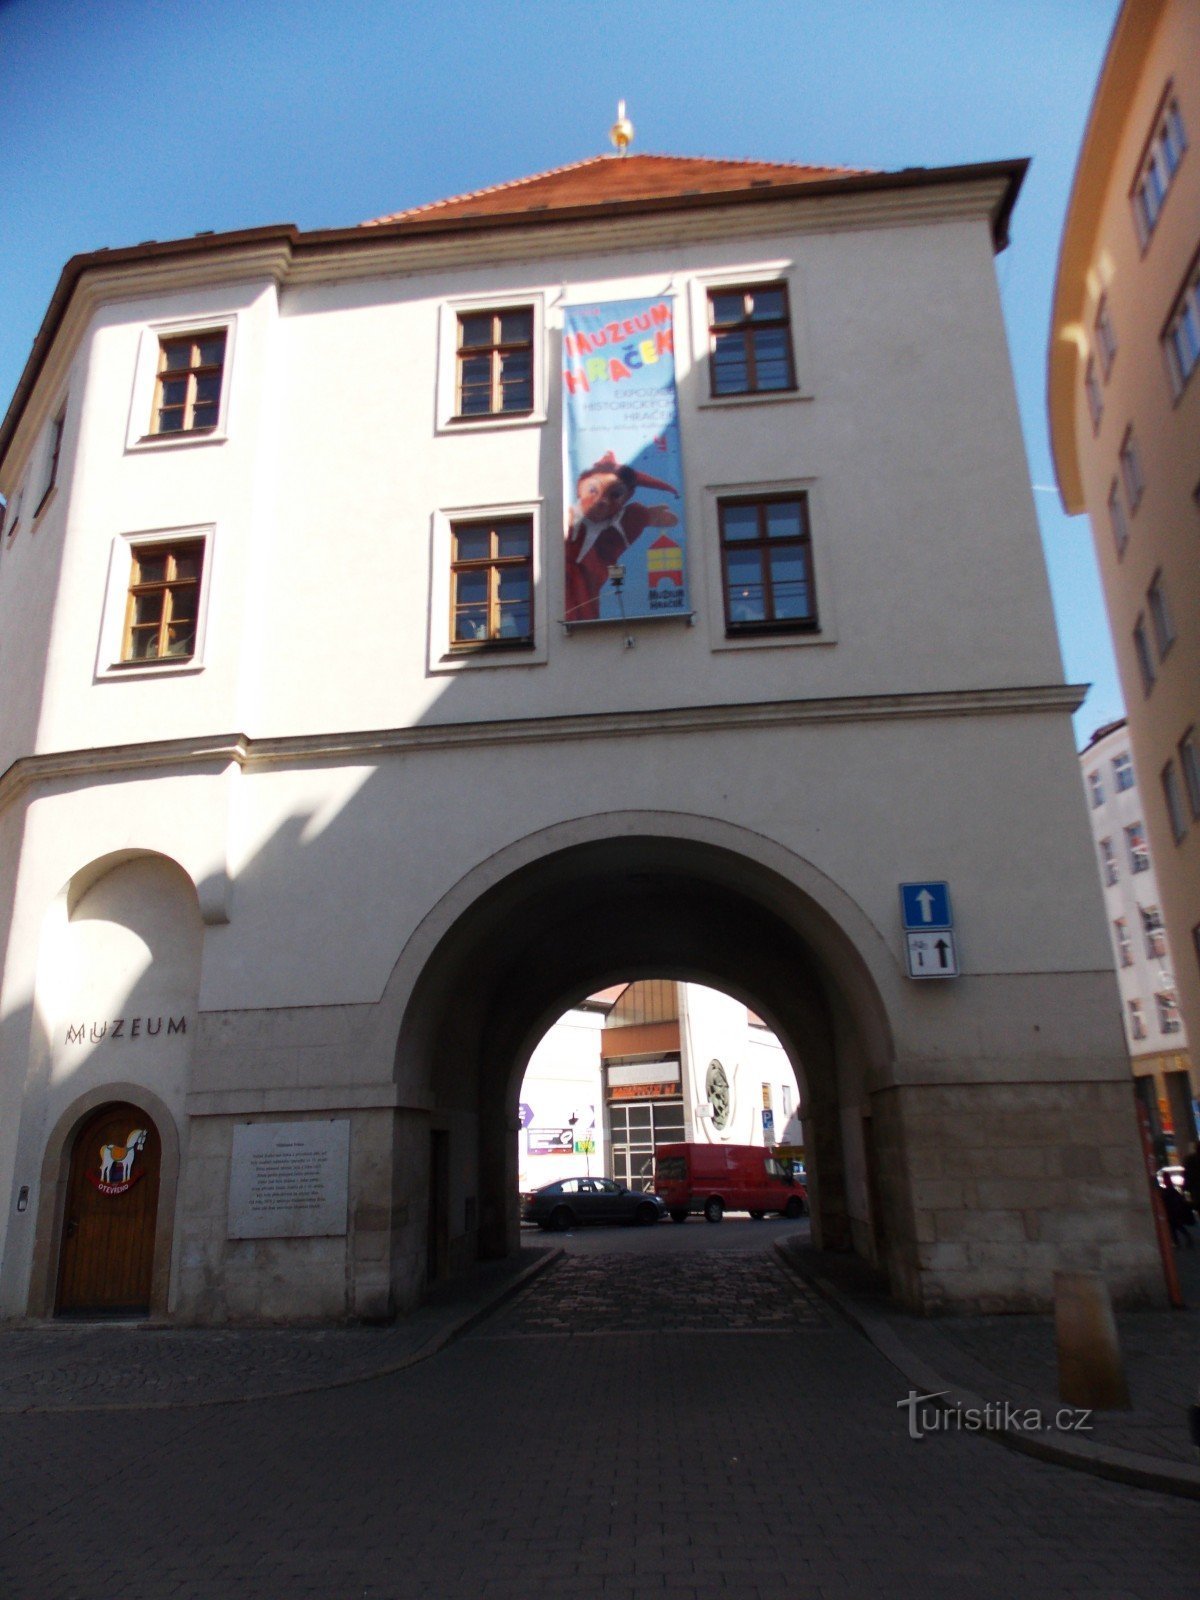 Měnín Gate in the center of Brno